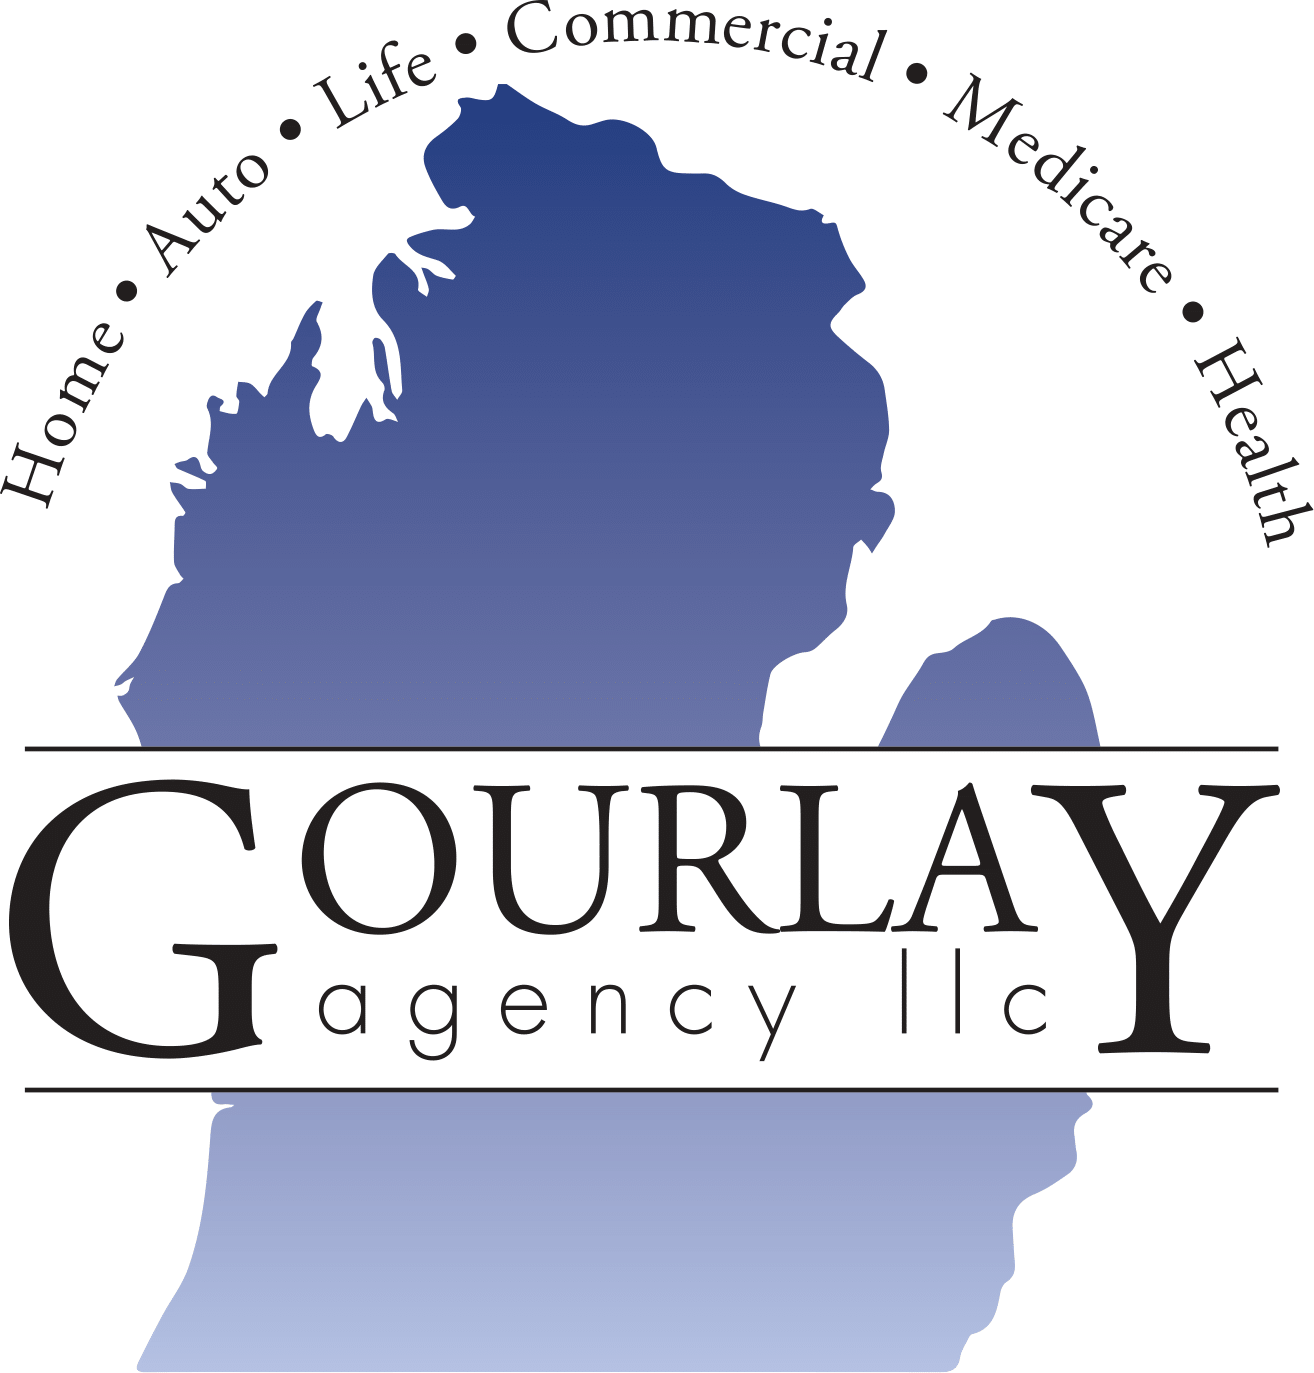 Gourlay Agency LLC